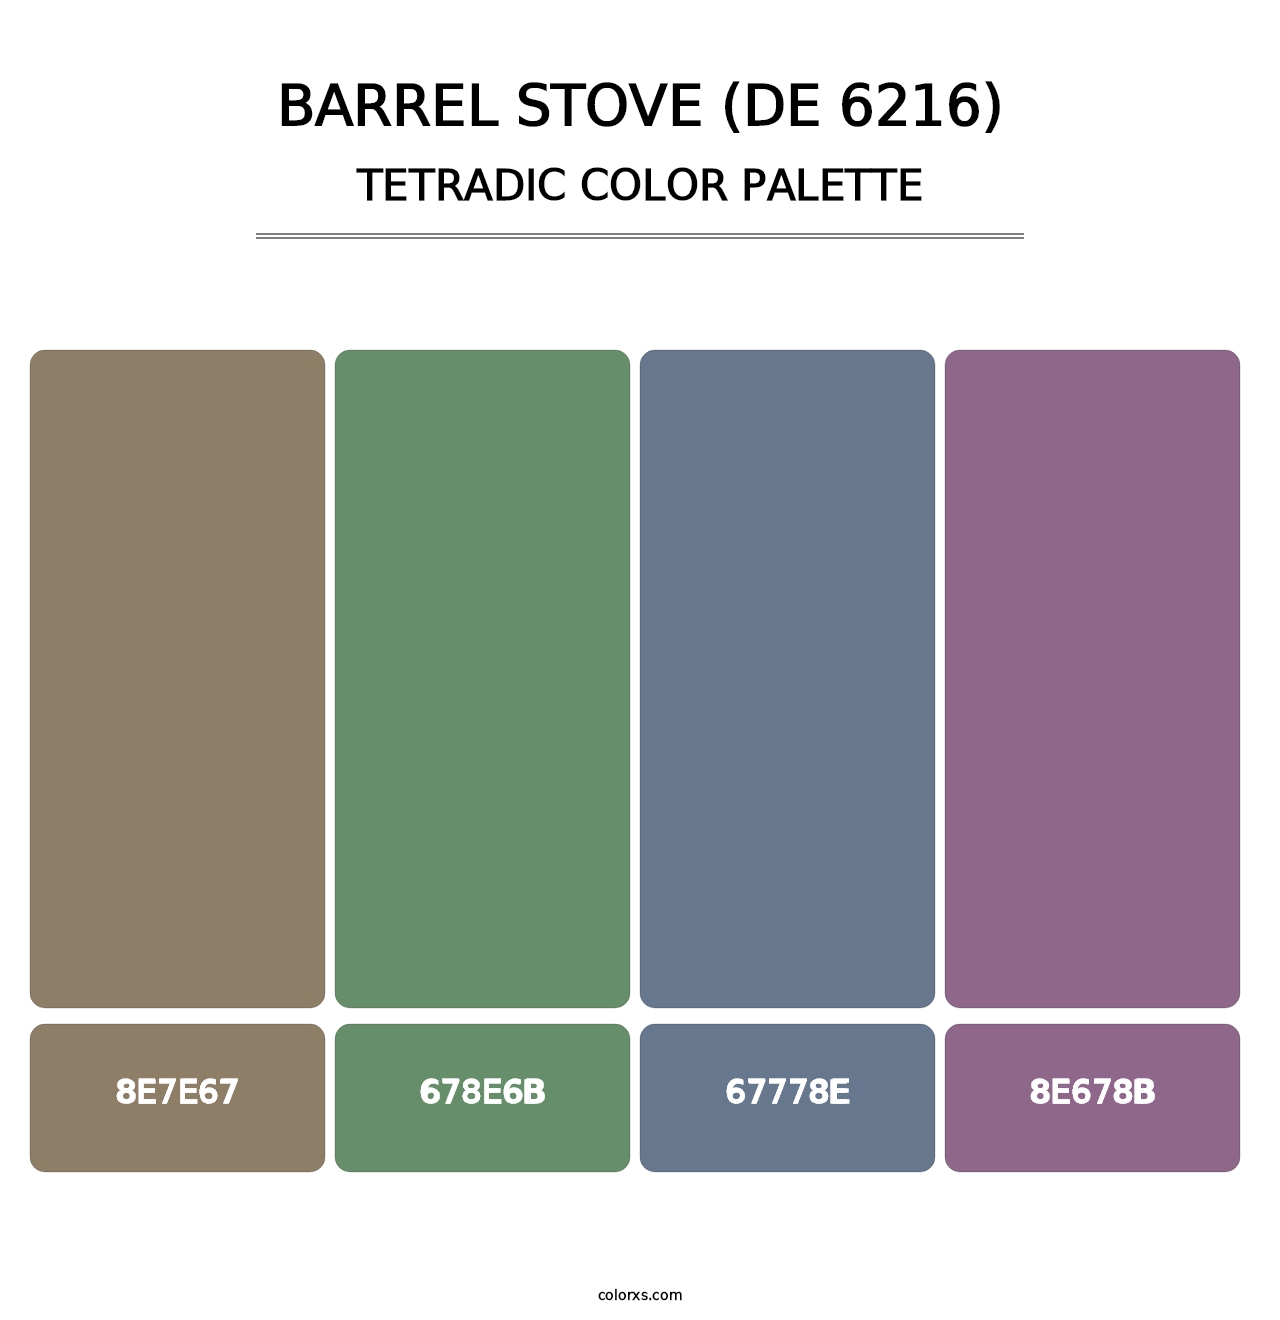 Barrel Stove (DE 6216) - Tetradic Color Palette